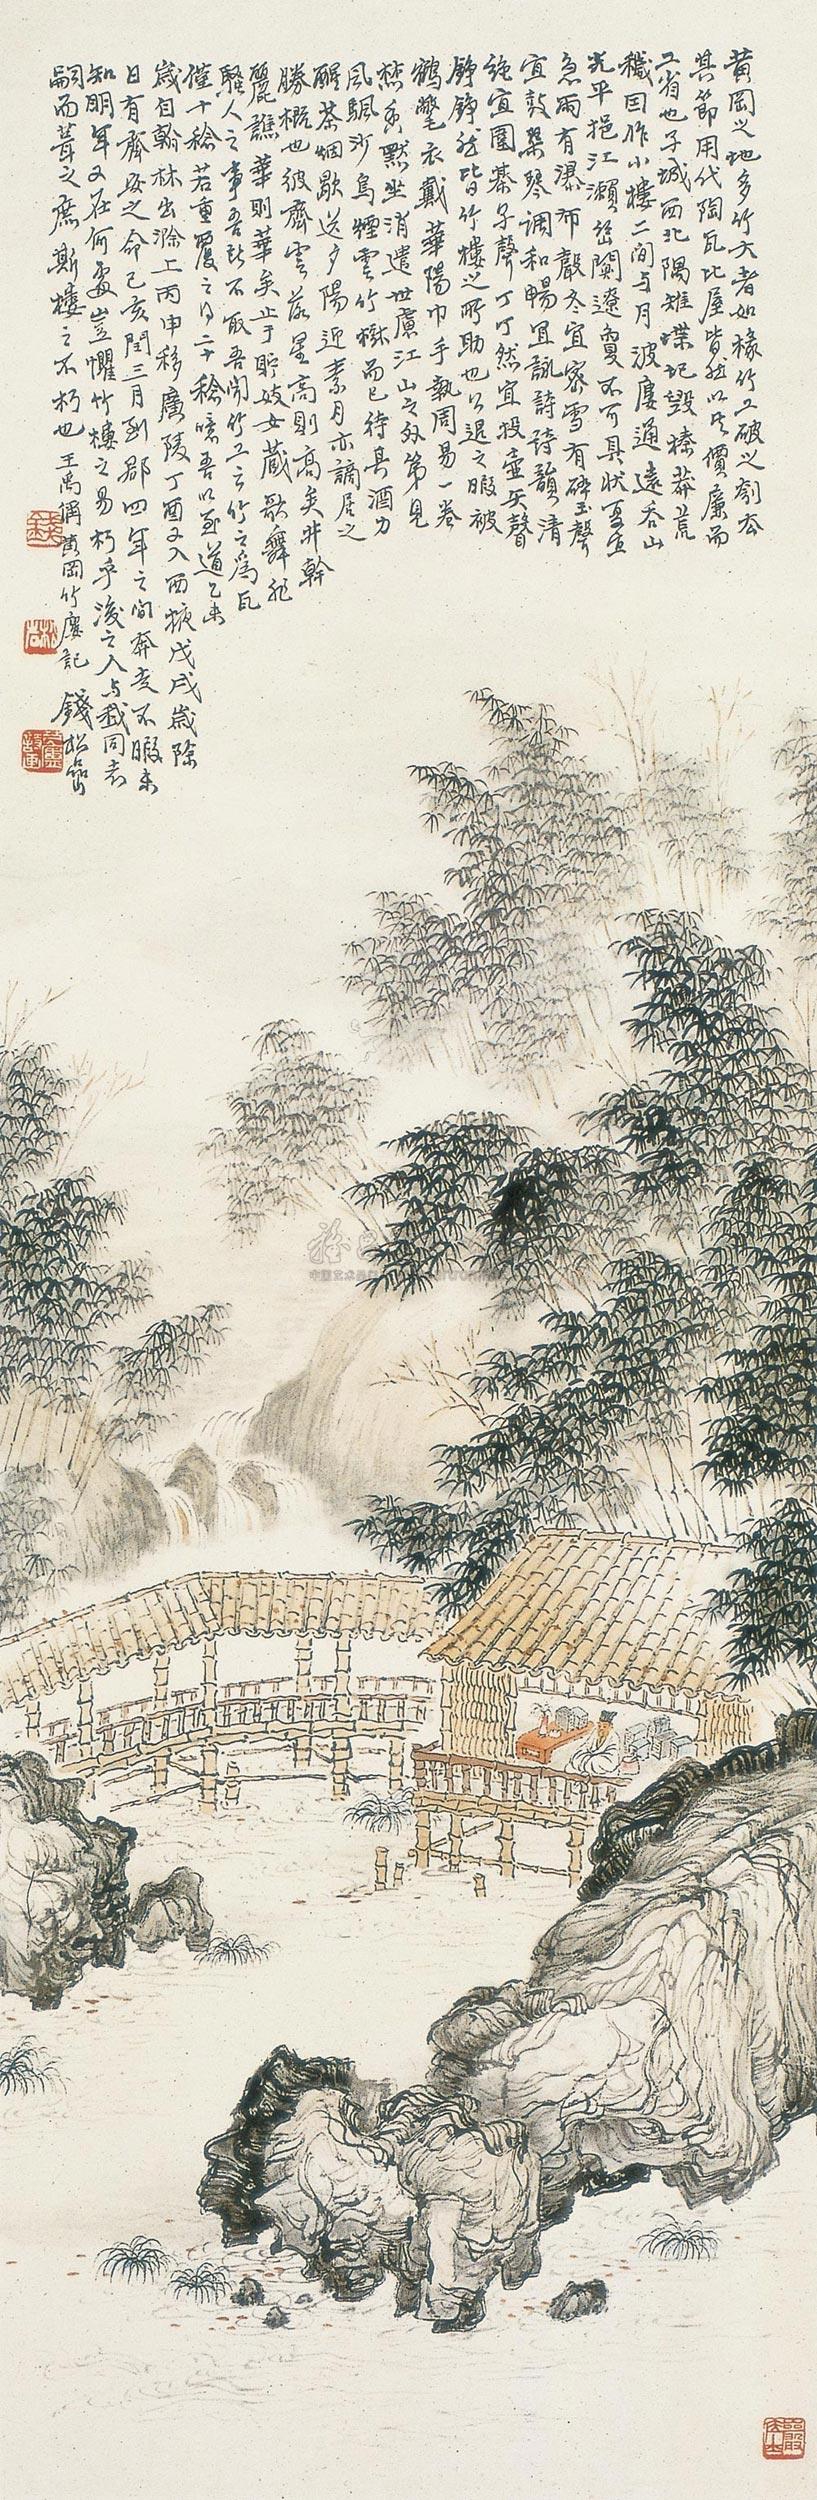 1815 黄冈竹楼图 立轴 设色纸本